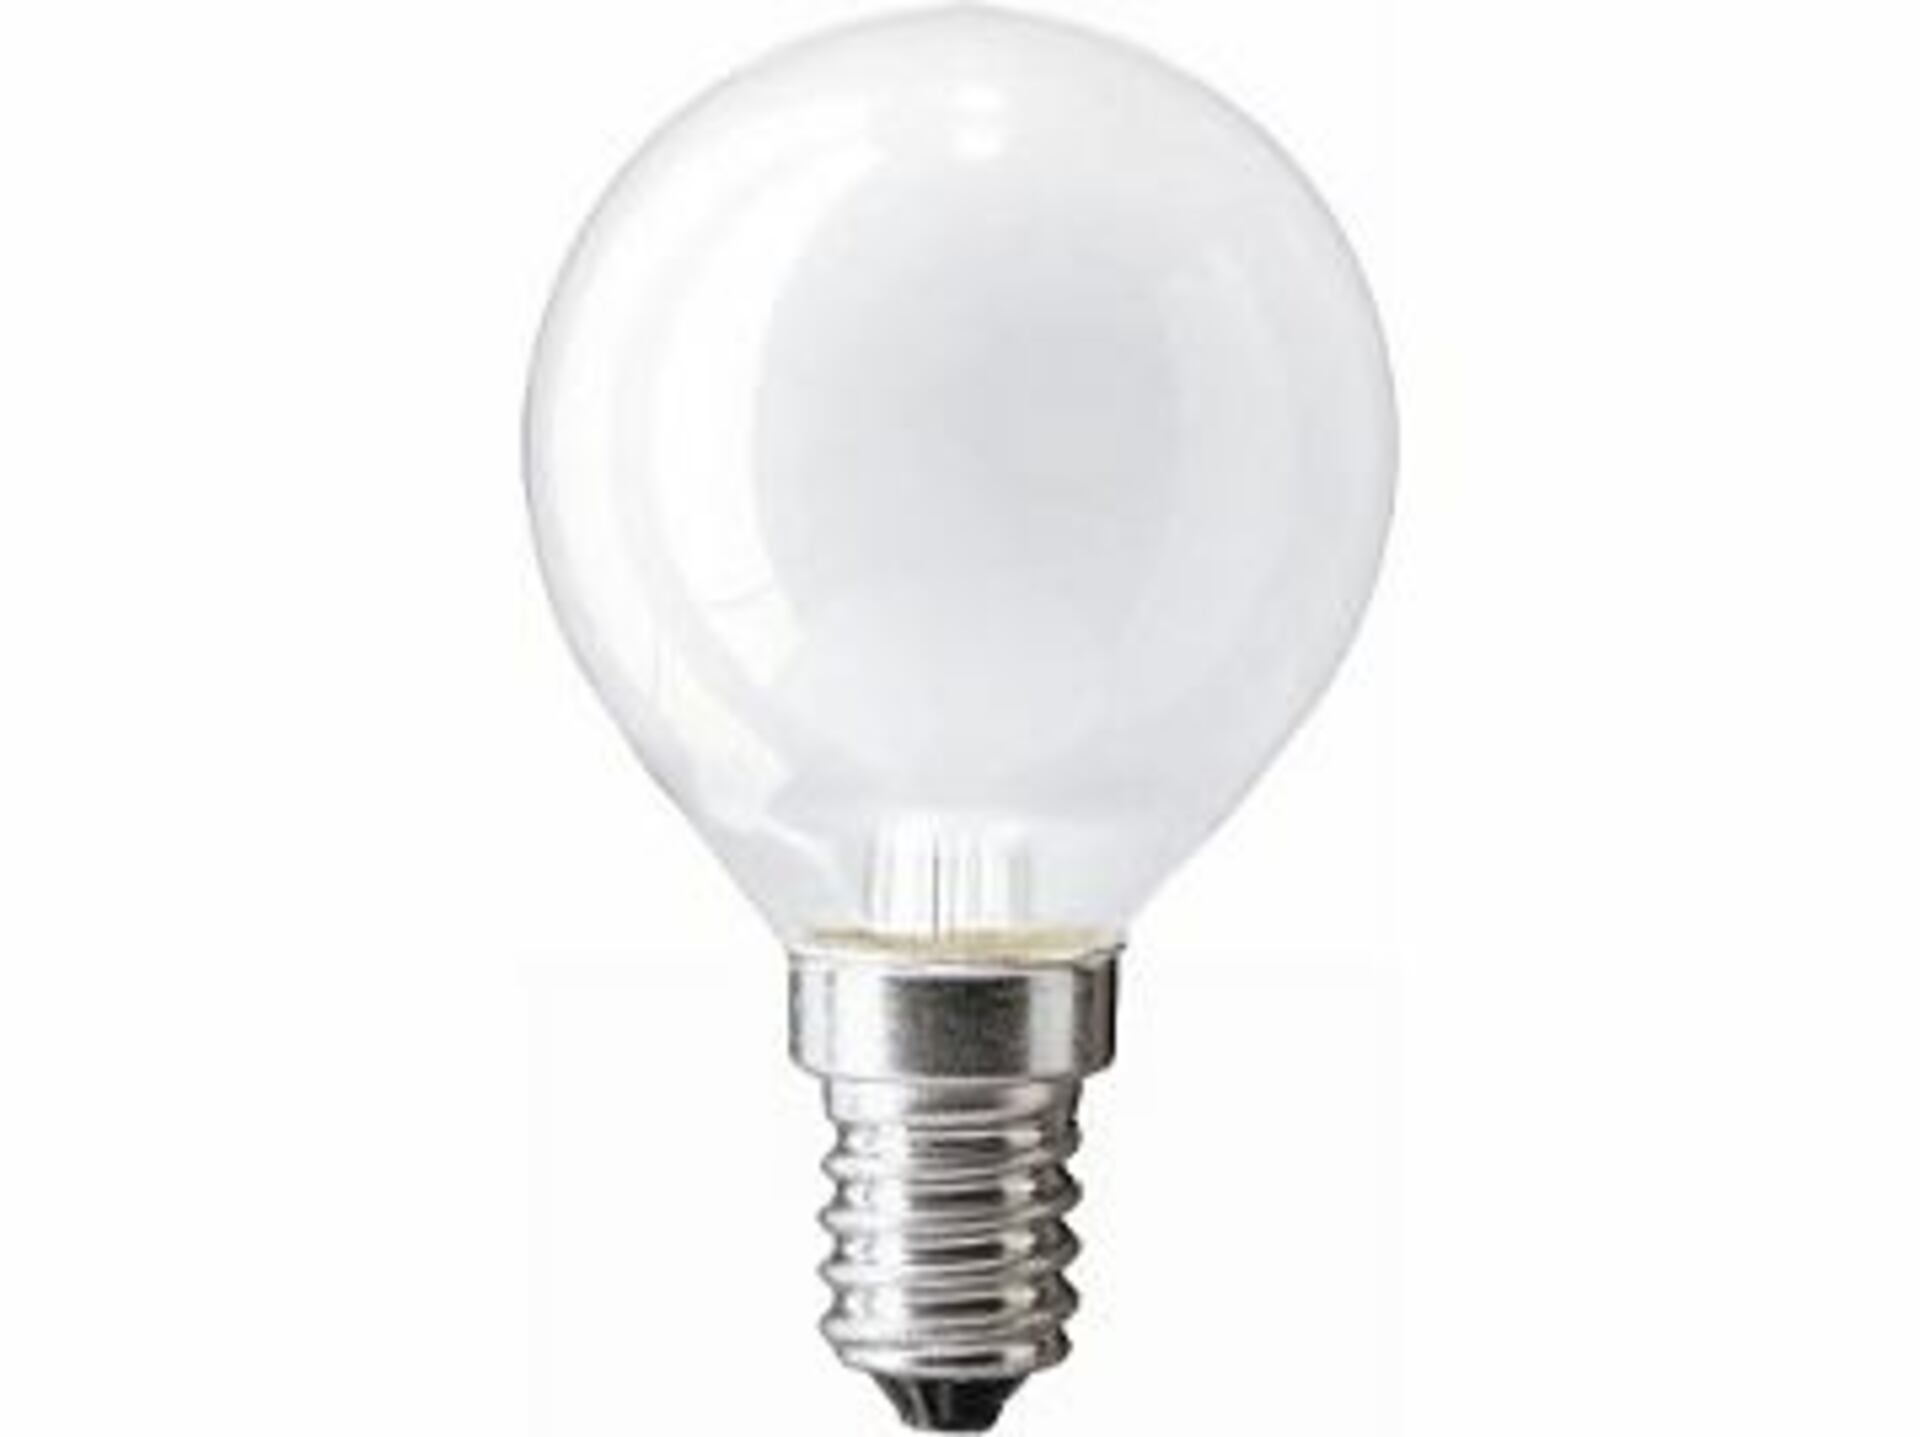 Tes-lamp žárovka 60W E14 240V kapková matná